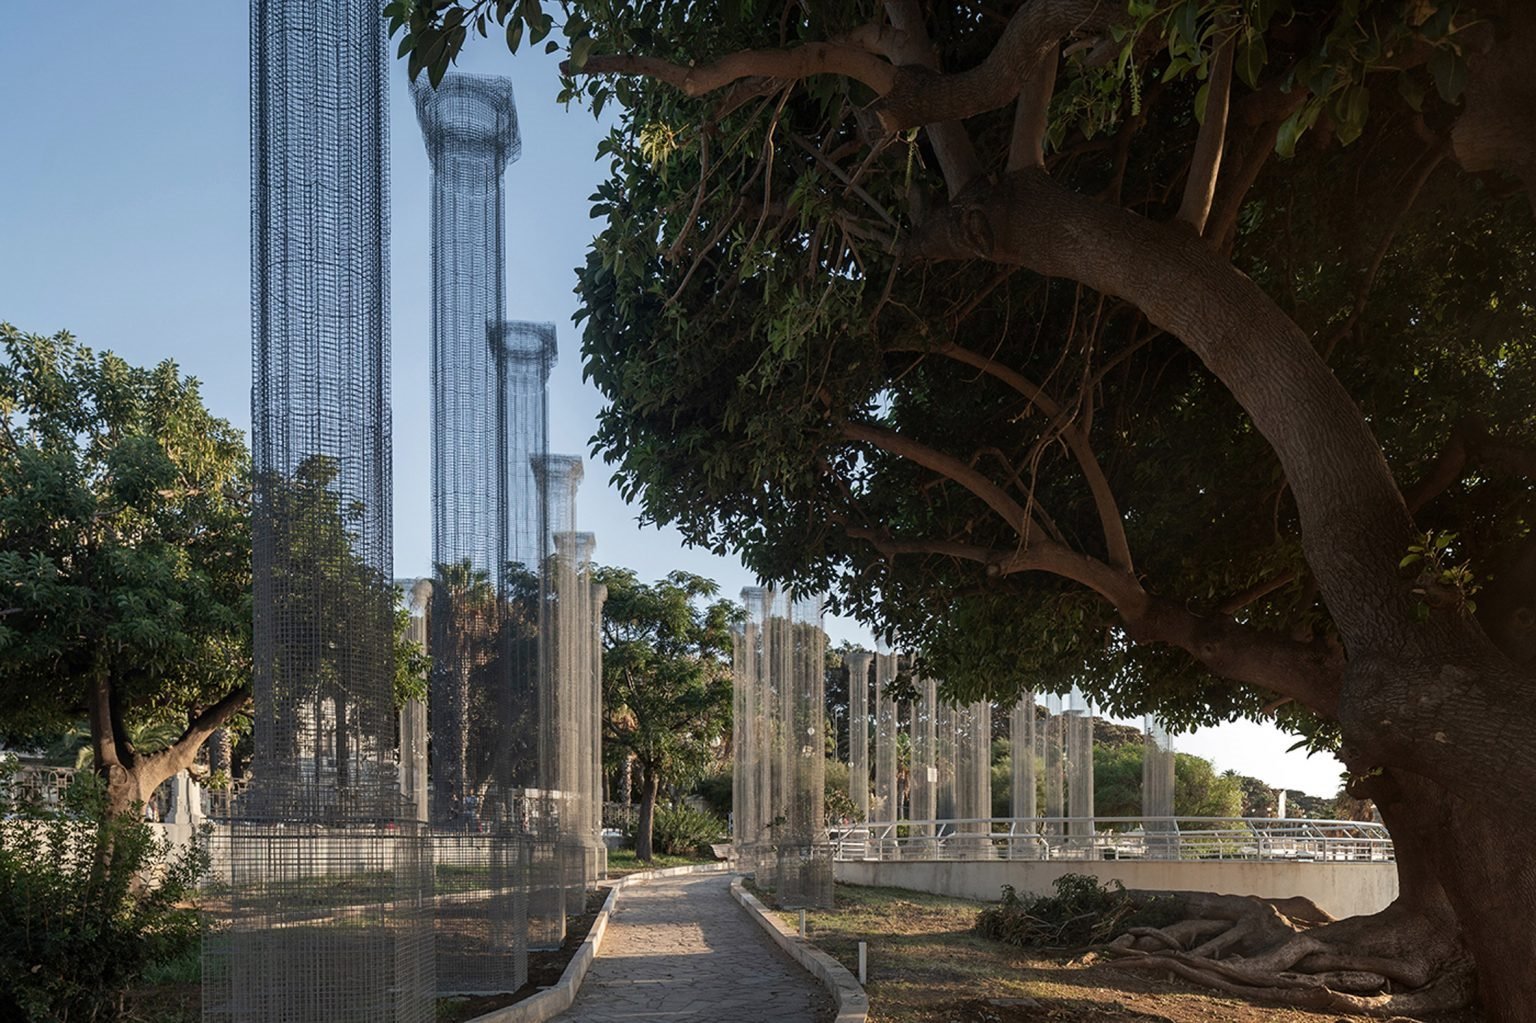 Vista del paseo con Columnas metalicas por Edoardo Tresoldi en la ciudad siciliana de Reggio Calabria 